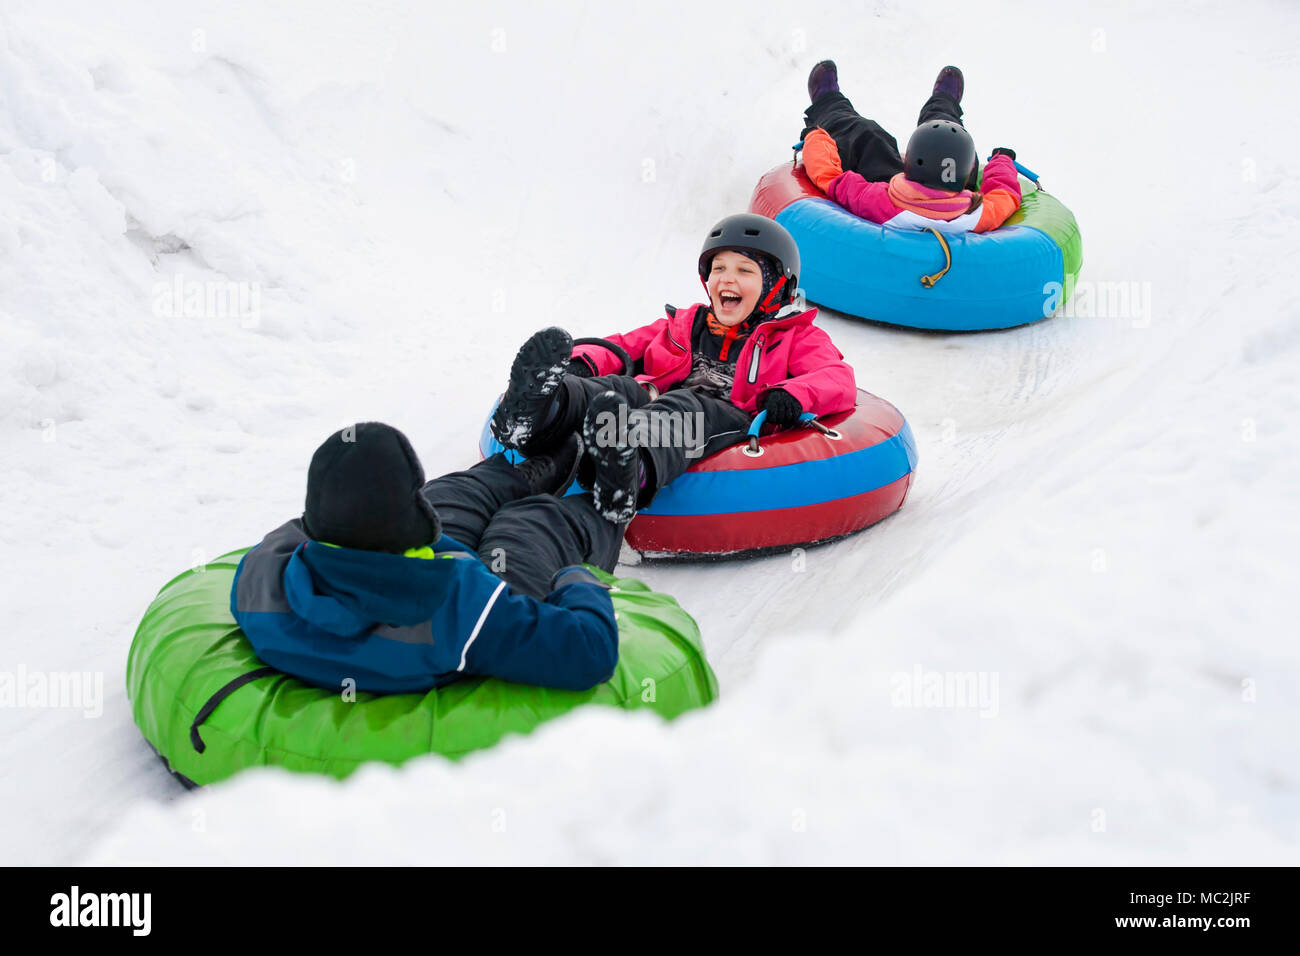 Kids on snow tubes descente à jour d'hiver Banque D'Images